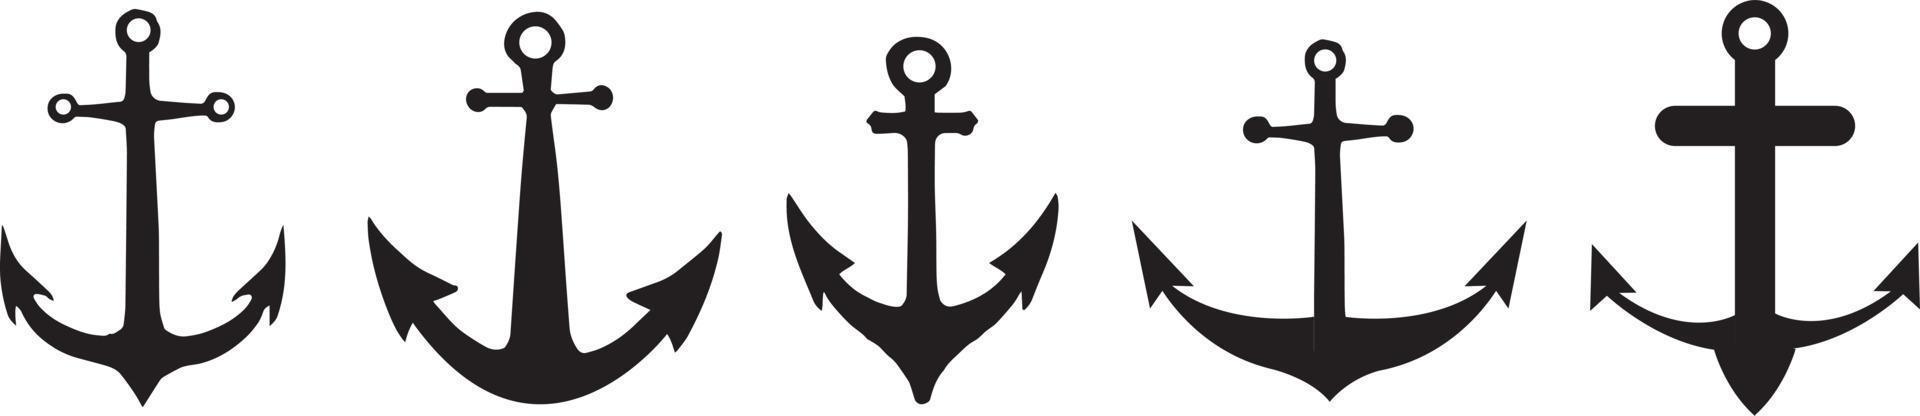 conjunto de iconos de anclas. señales náuticas. ilustración vectorial vector